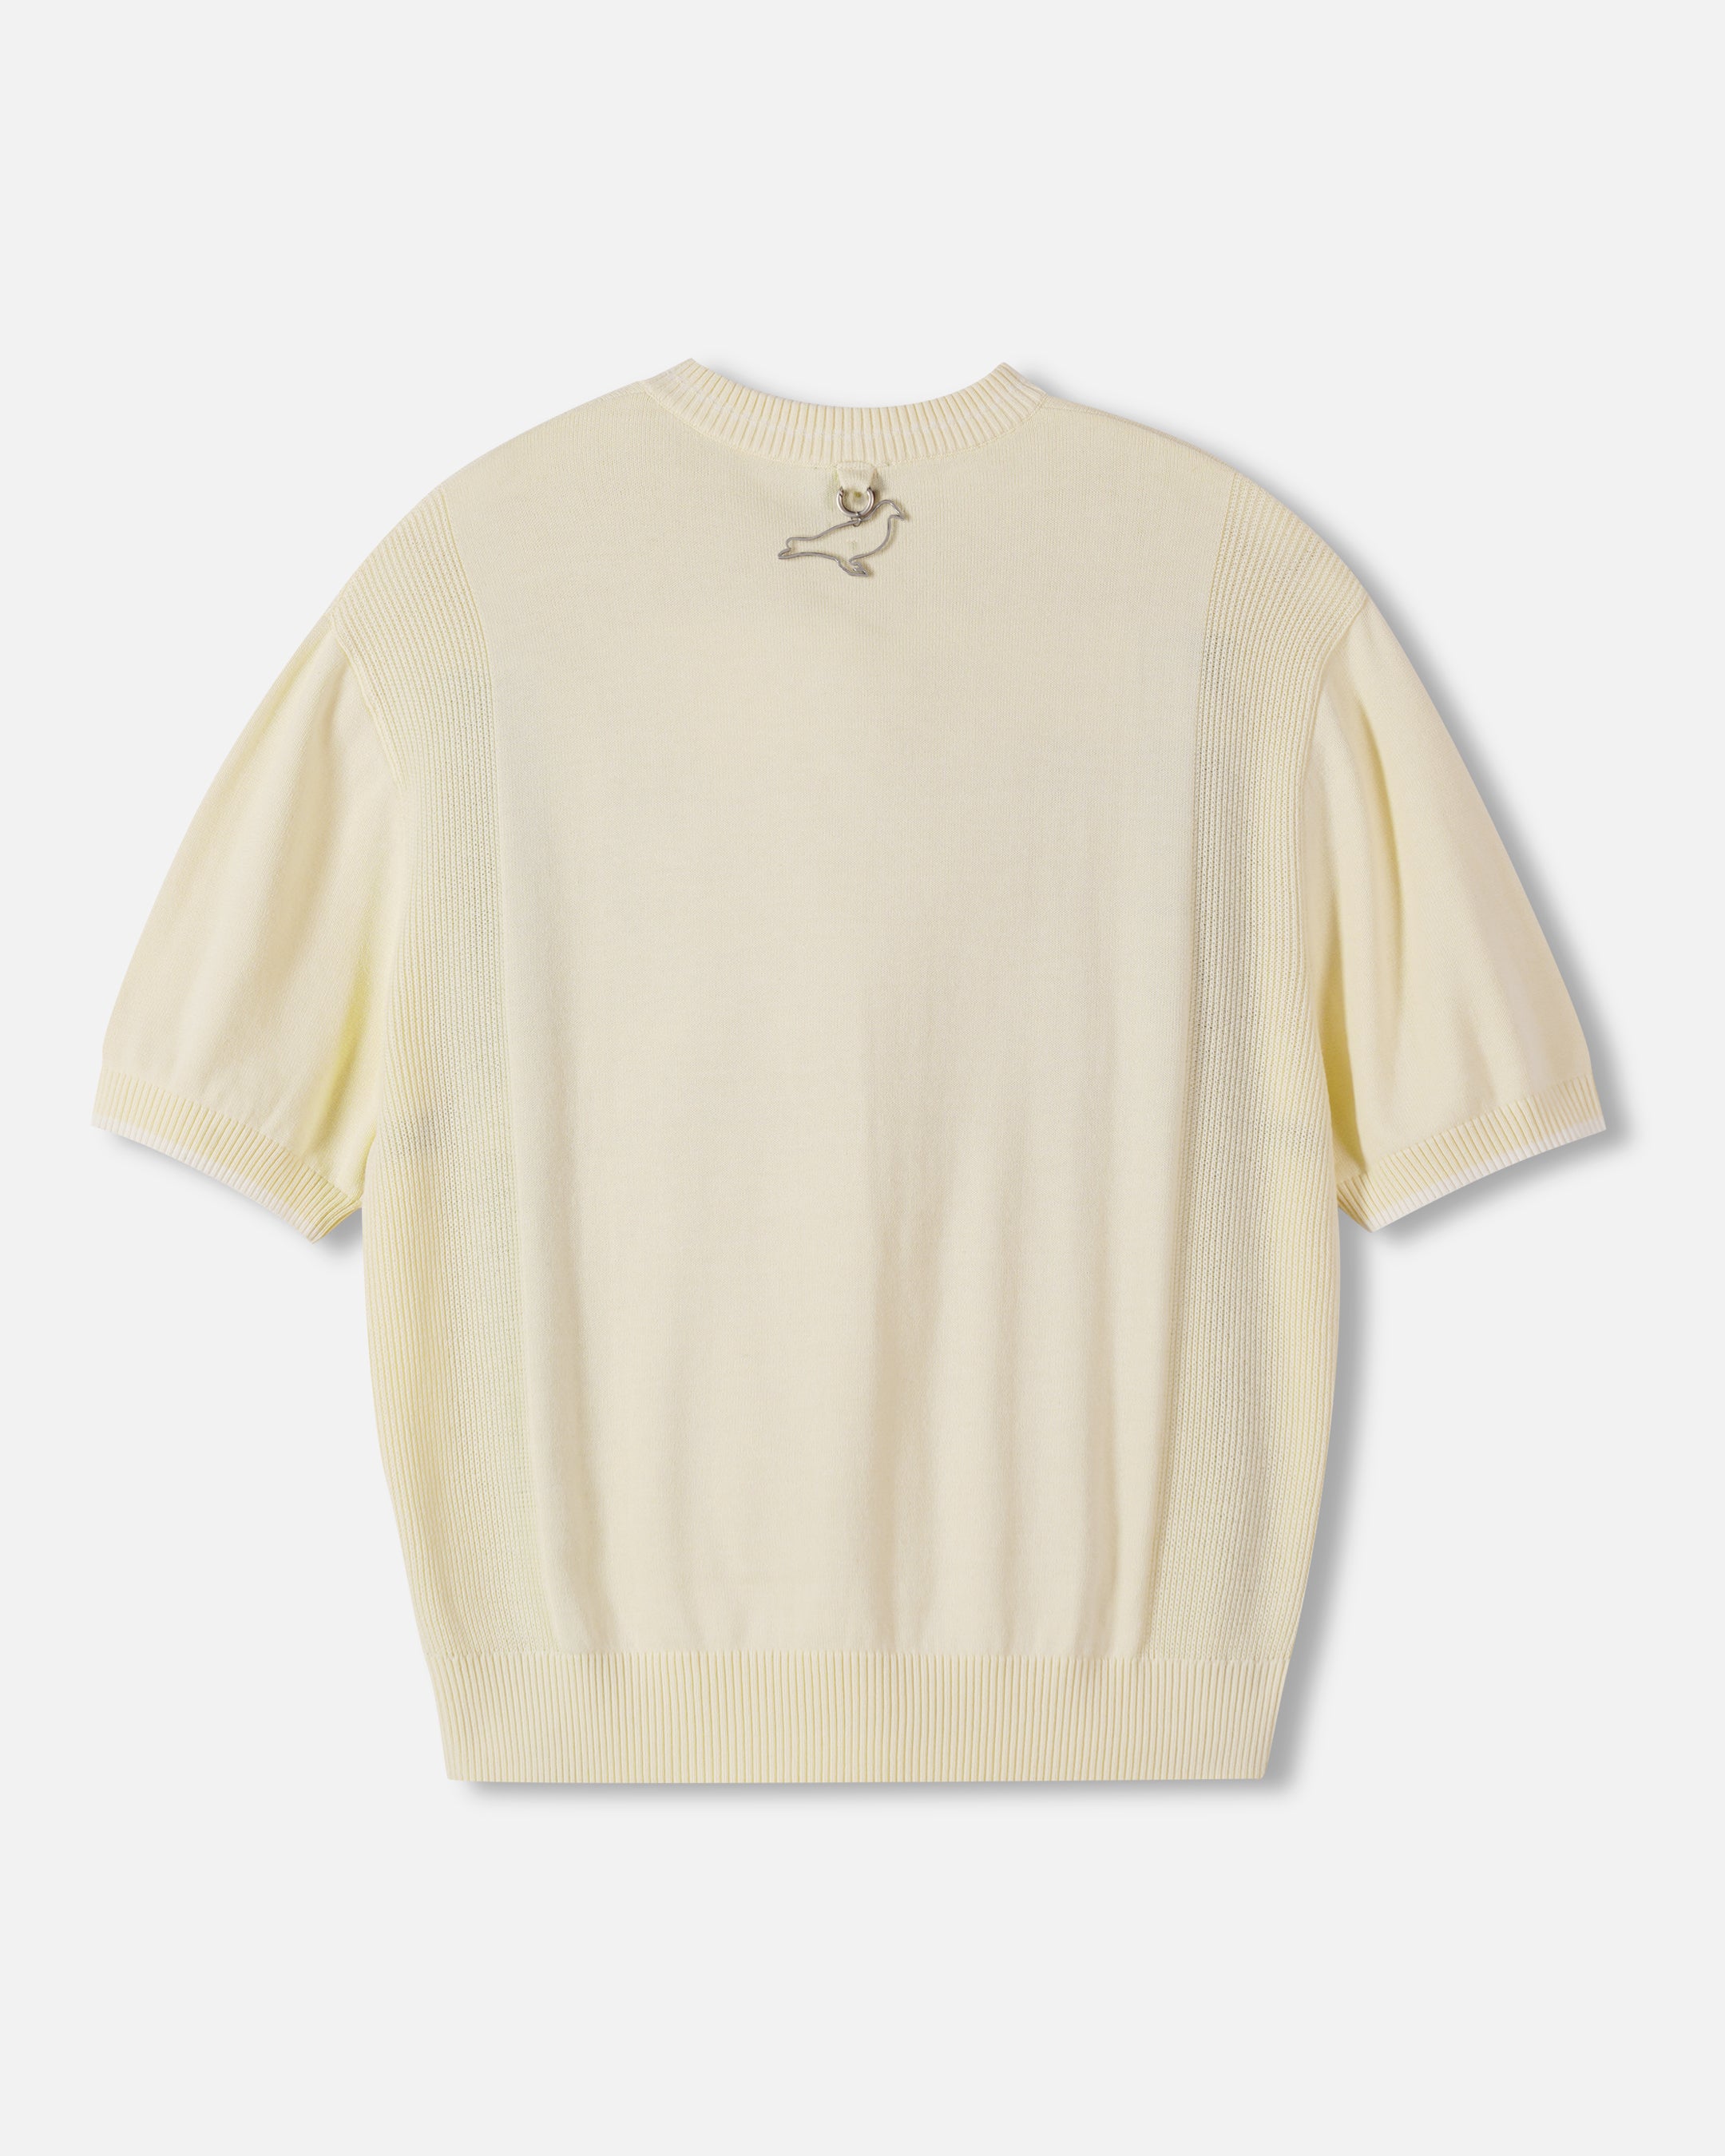 McCarren Quarter Zip Shirt - Tee | Staple Pigeon